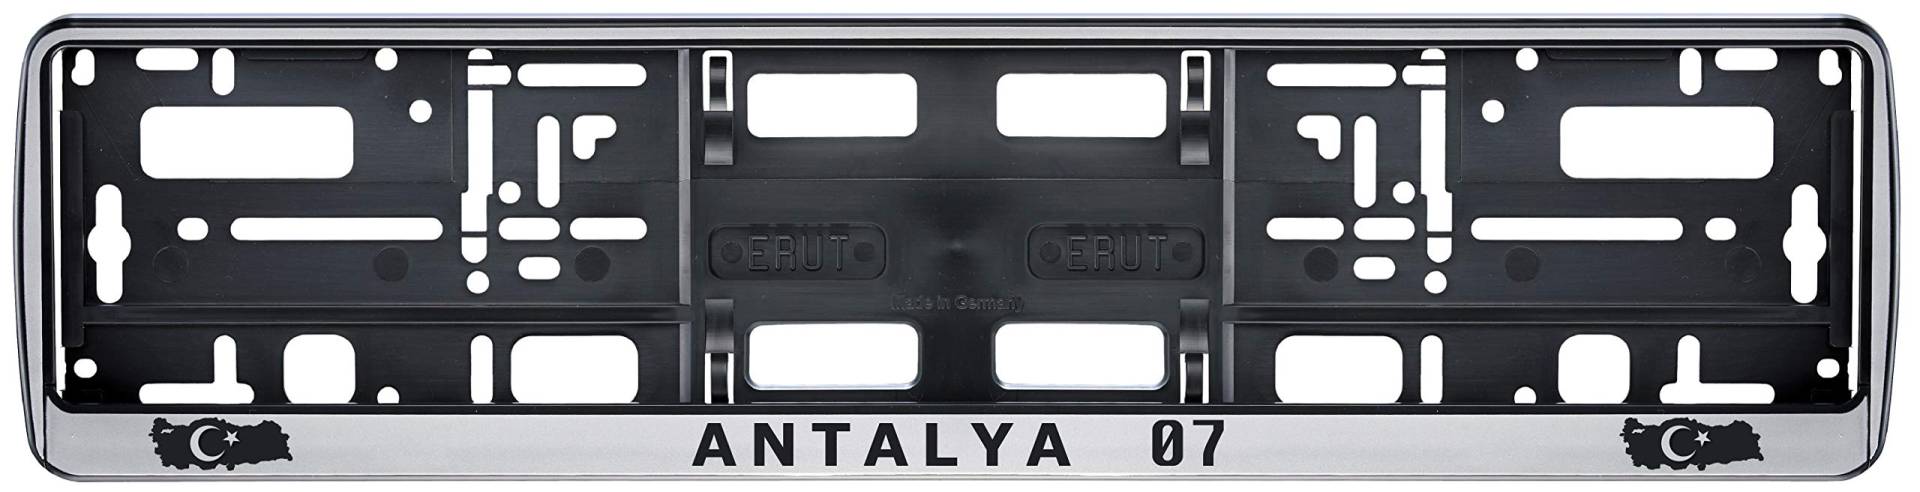 Auto Kennzeichenhalter in der Farbe Silber/Schwarz Nummernschildhalterung Auto, Nummernschildhalter Türkei Flagge 07 Antalya 2 Stück von aina